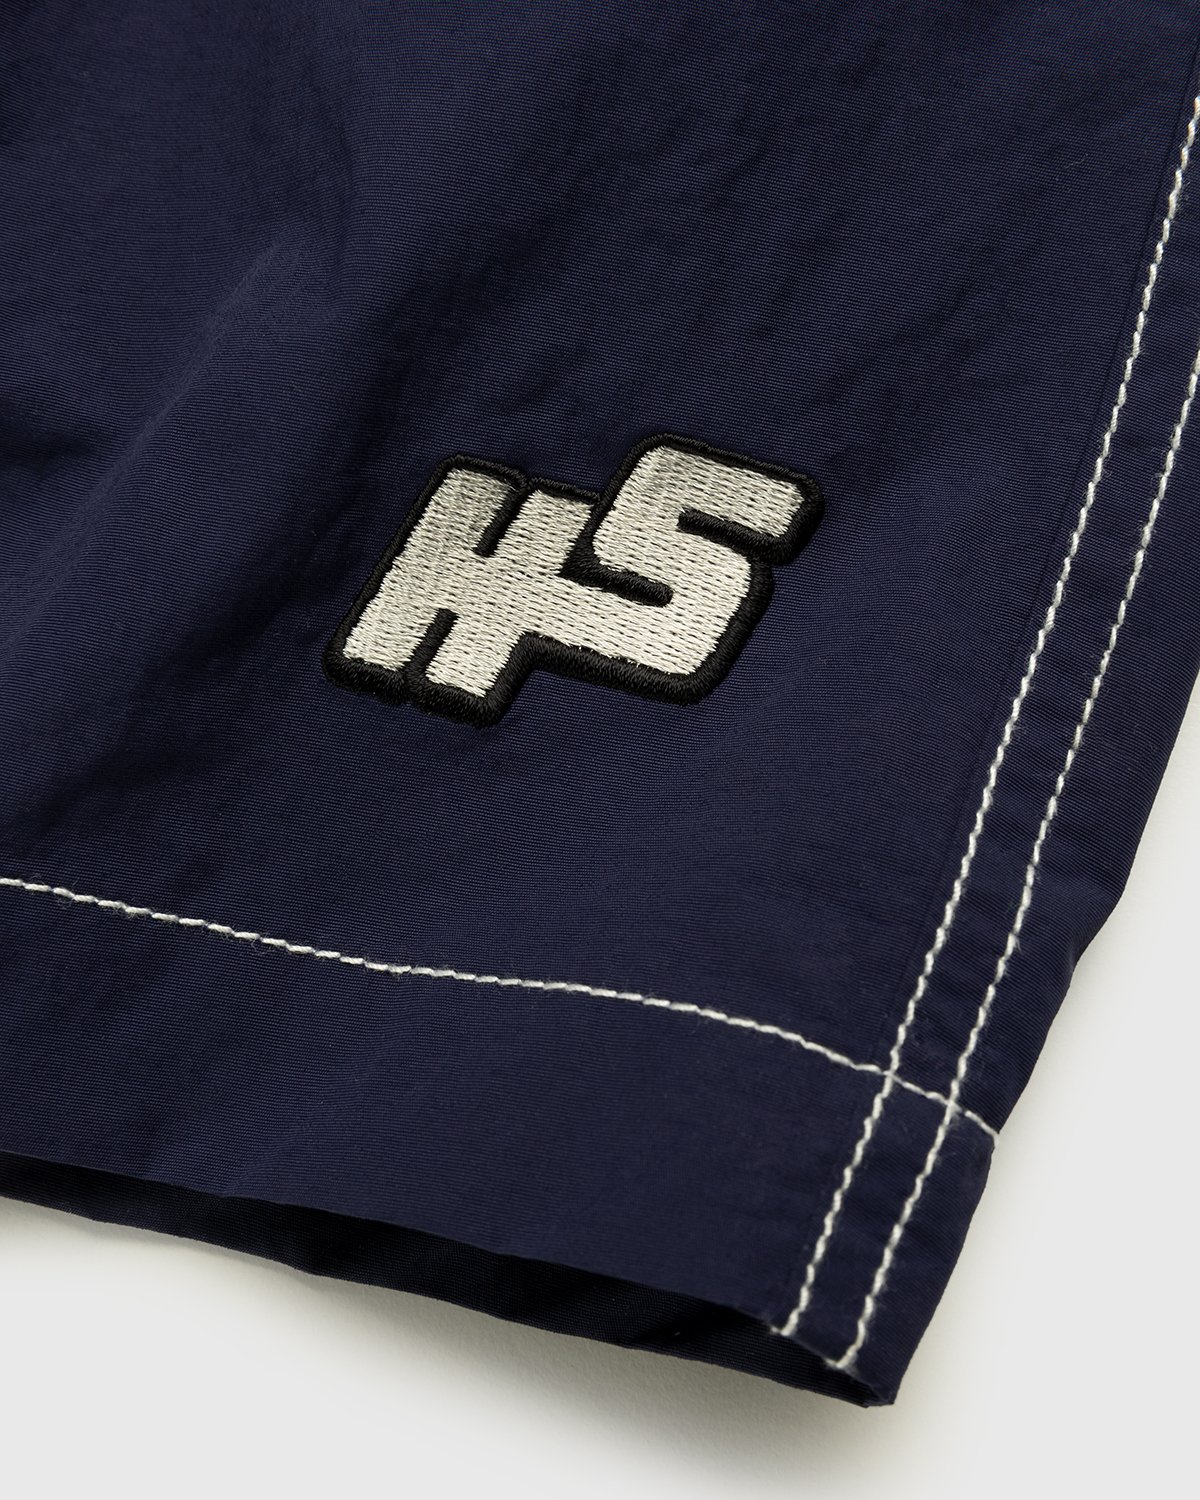 Highsnobiety - Contrast Brushed Nylon Water Shorts Navy - Clothing - Blue - Image 6